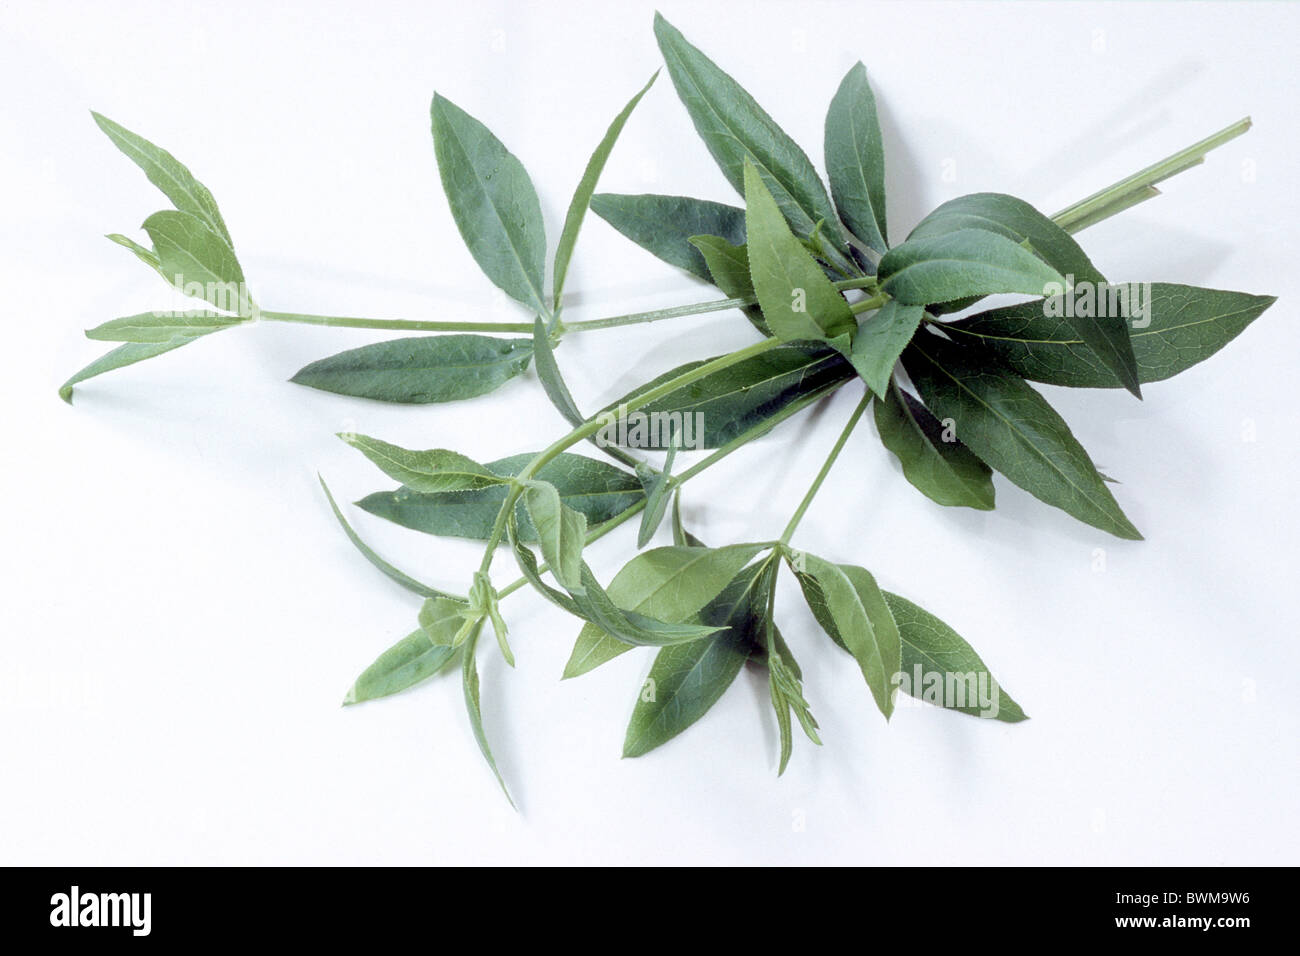 La Garance (Rubia tinctorium), des branches avec des feuilles, studio photo. Banque D'Images